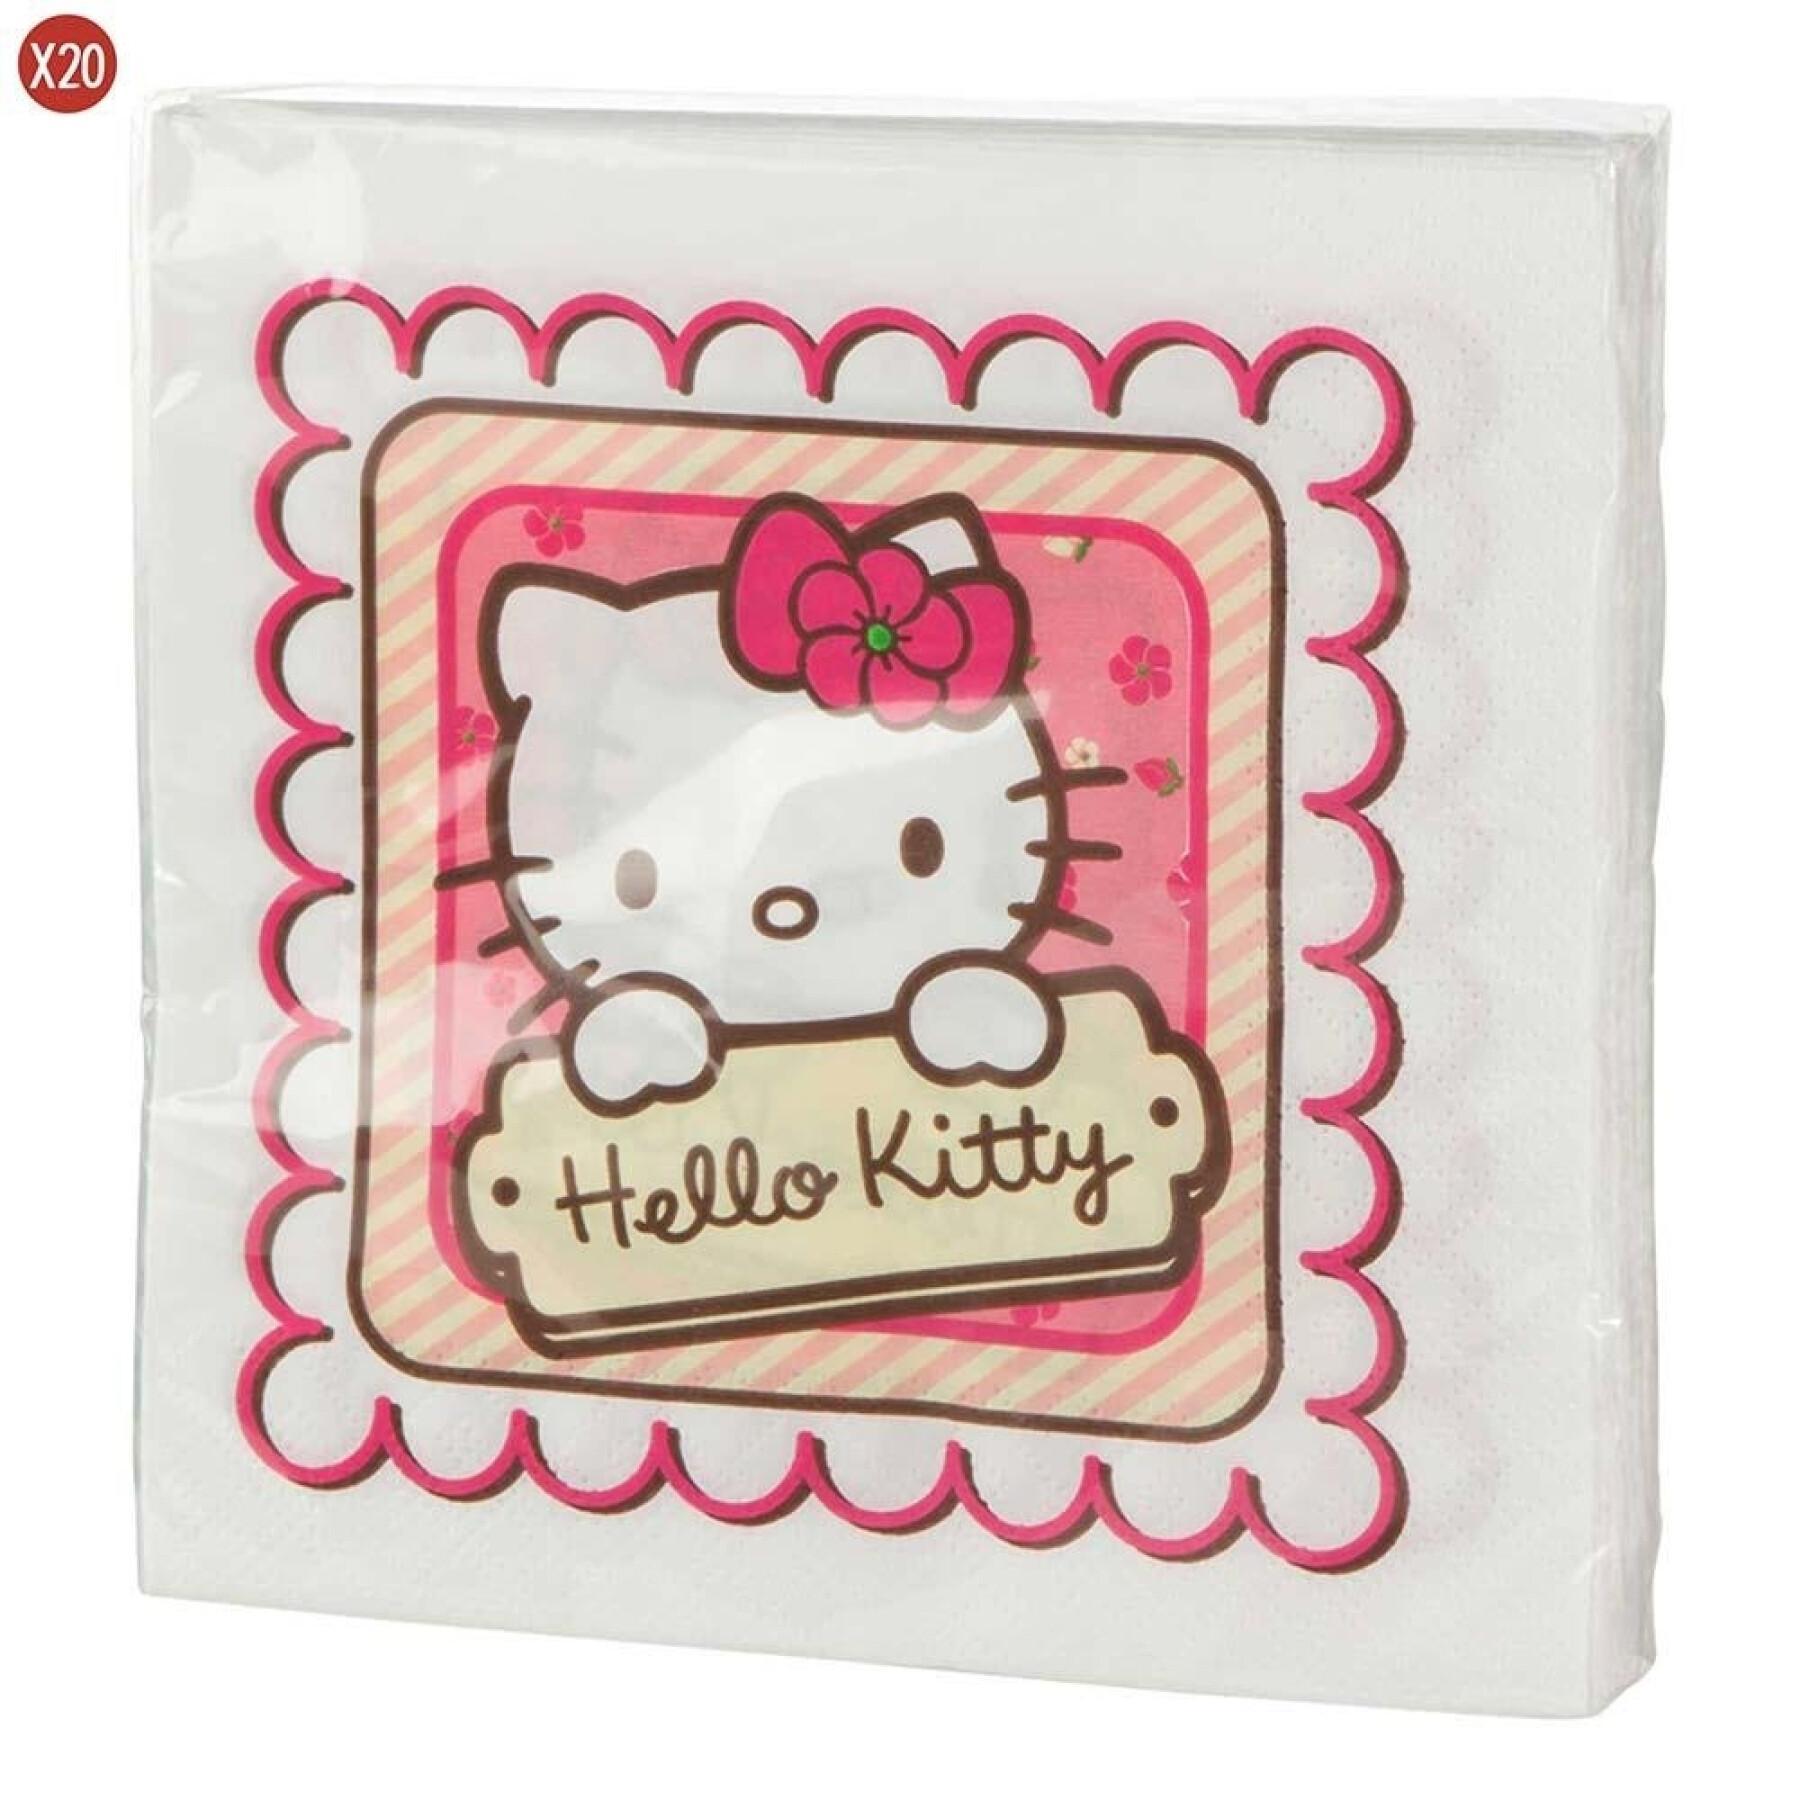 Juego de 20 servilletas de 2 capas Hello Kitty